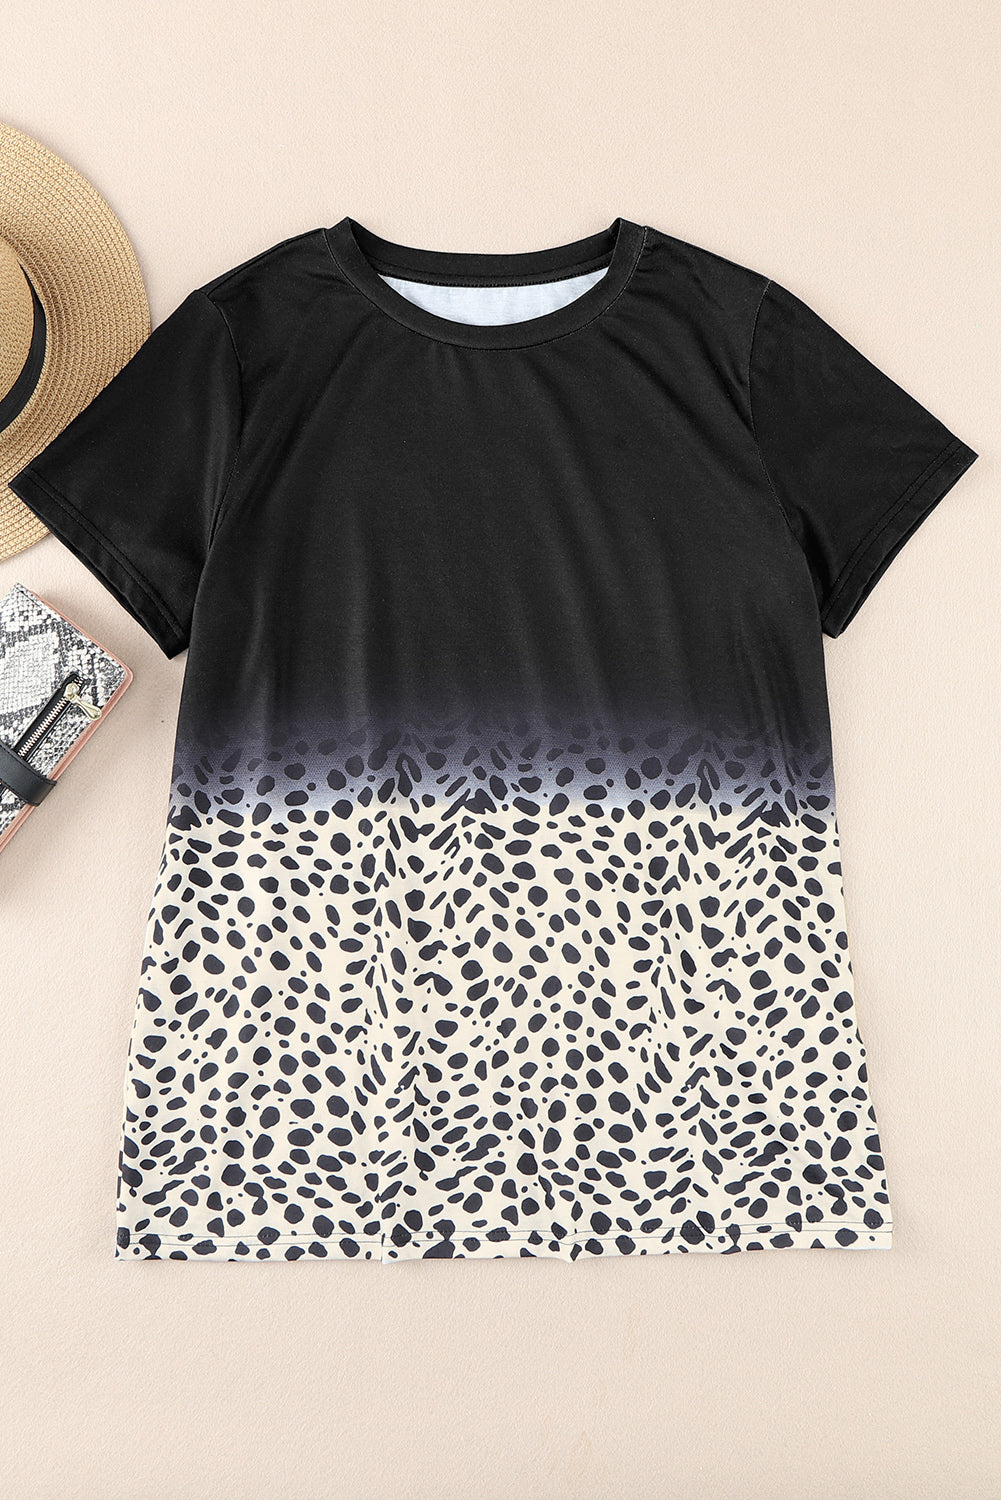 Schwarzes T-Shirt mit Ombre-Leopardenmuster